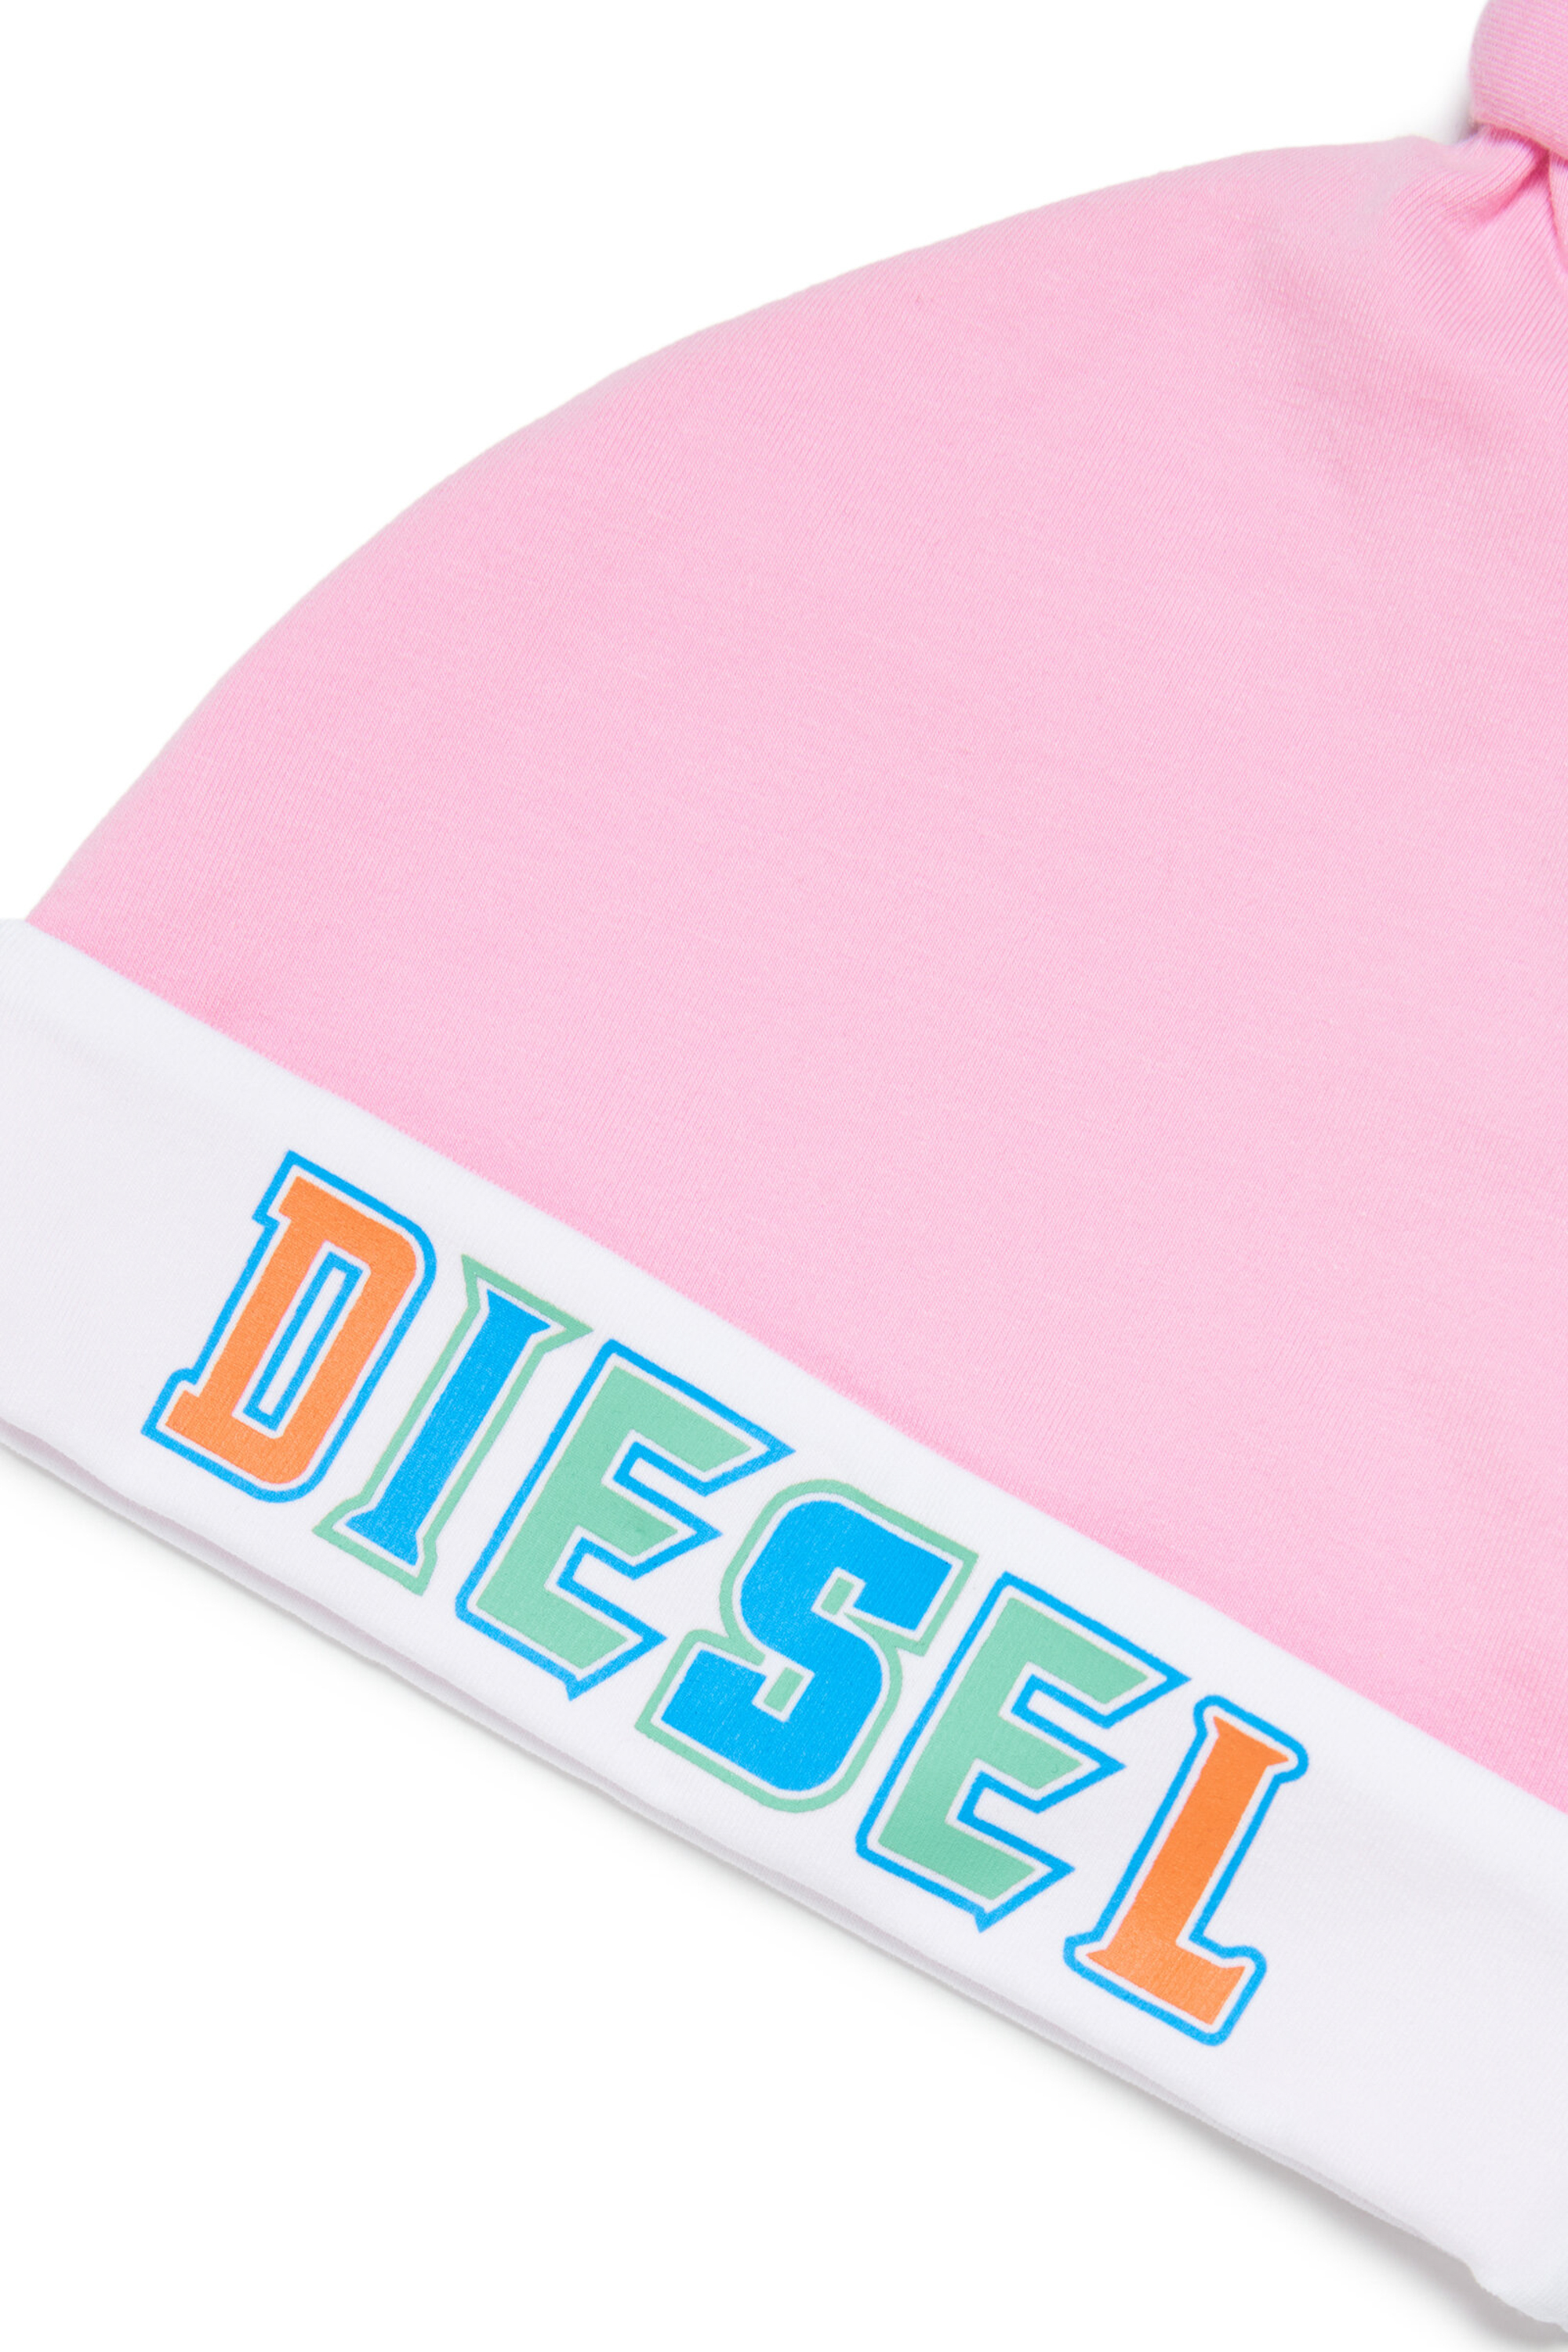 Diesel - FRIL-NB, Rose - Image 3